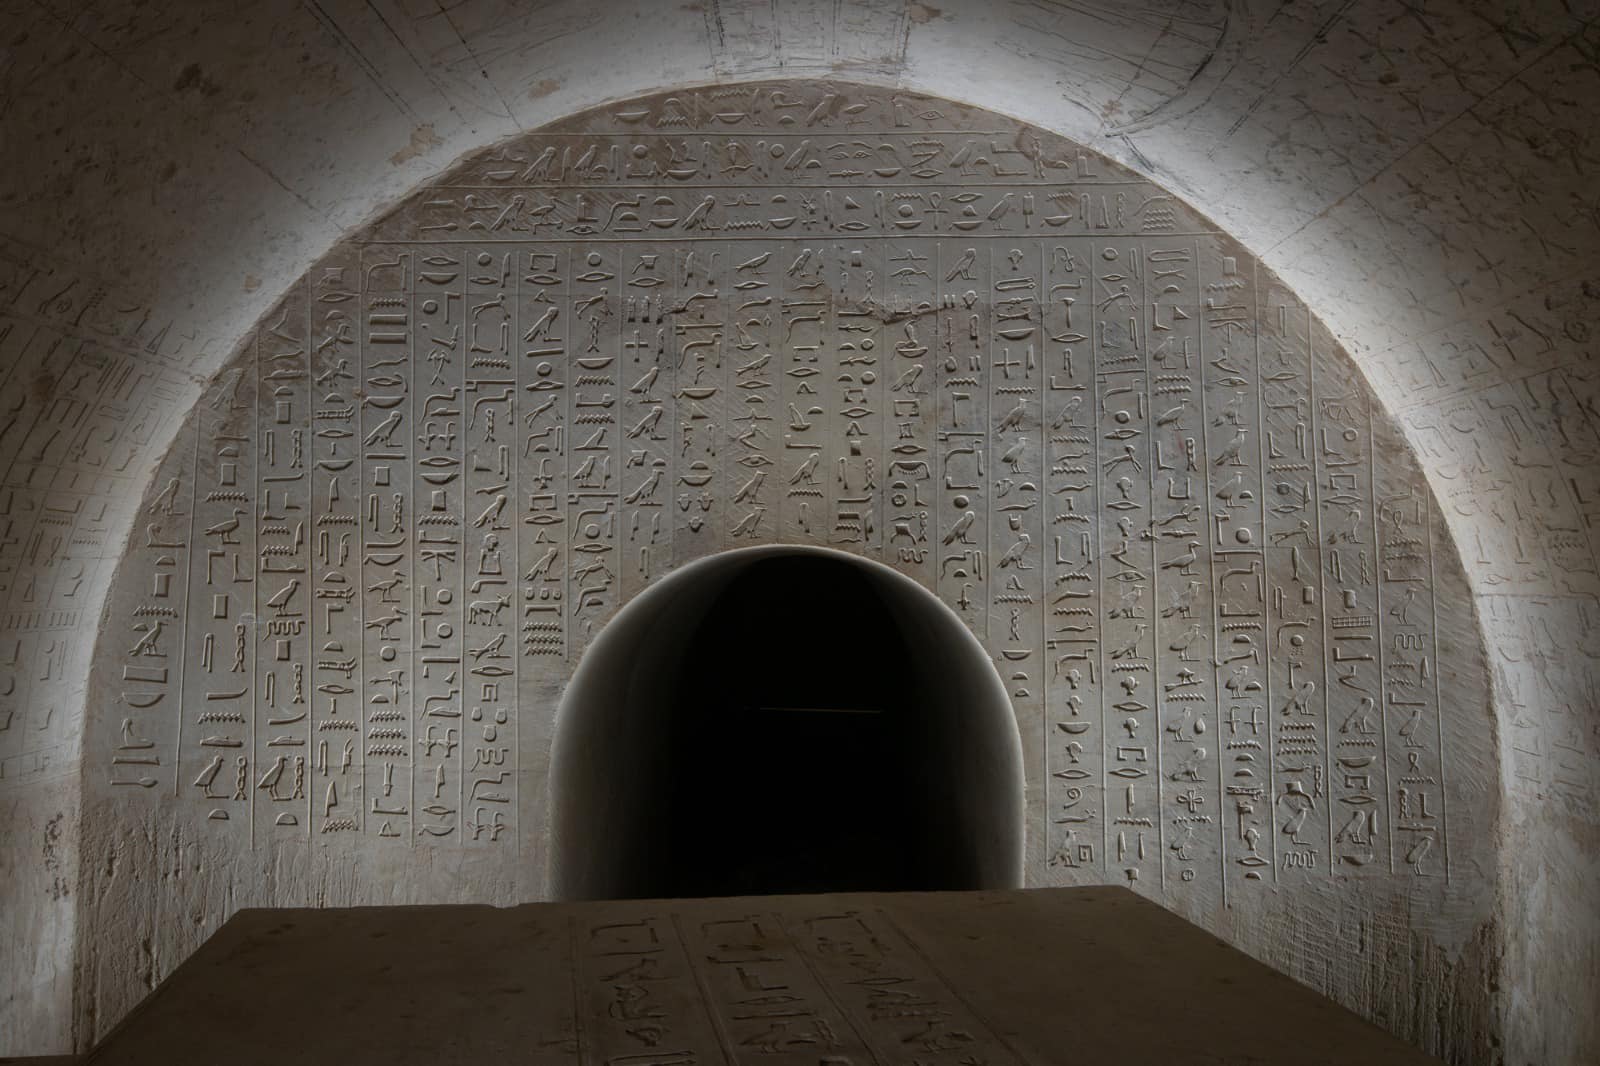 العثور على مقبرة أثرية لكاتب ملكي في مصر..ما الأسرار التي تكشفها؟ 